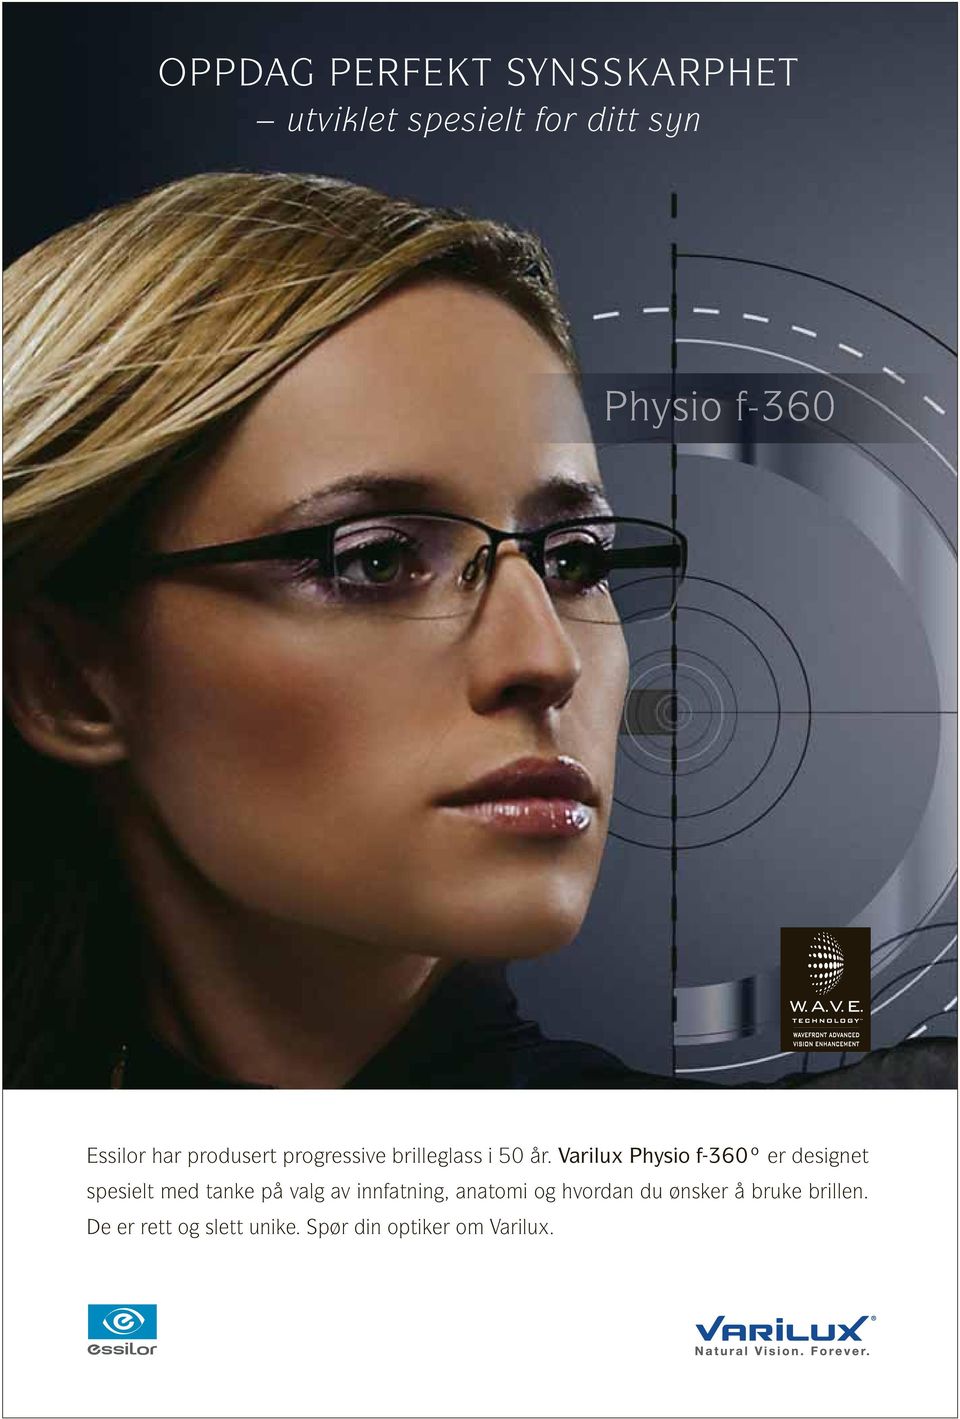 Varilux Physio f-360º er designet spesielt med tanke på valg av